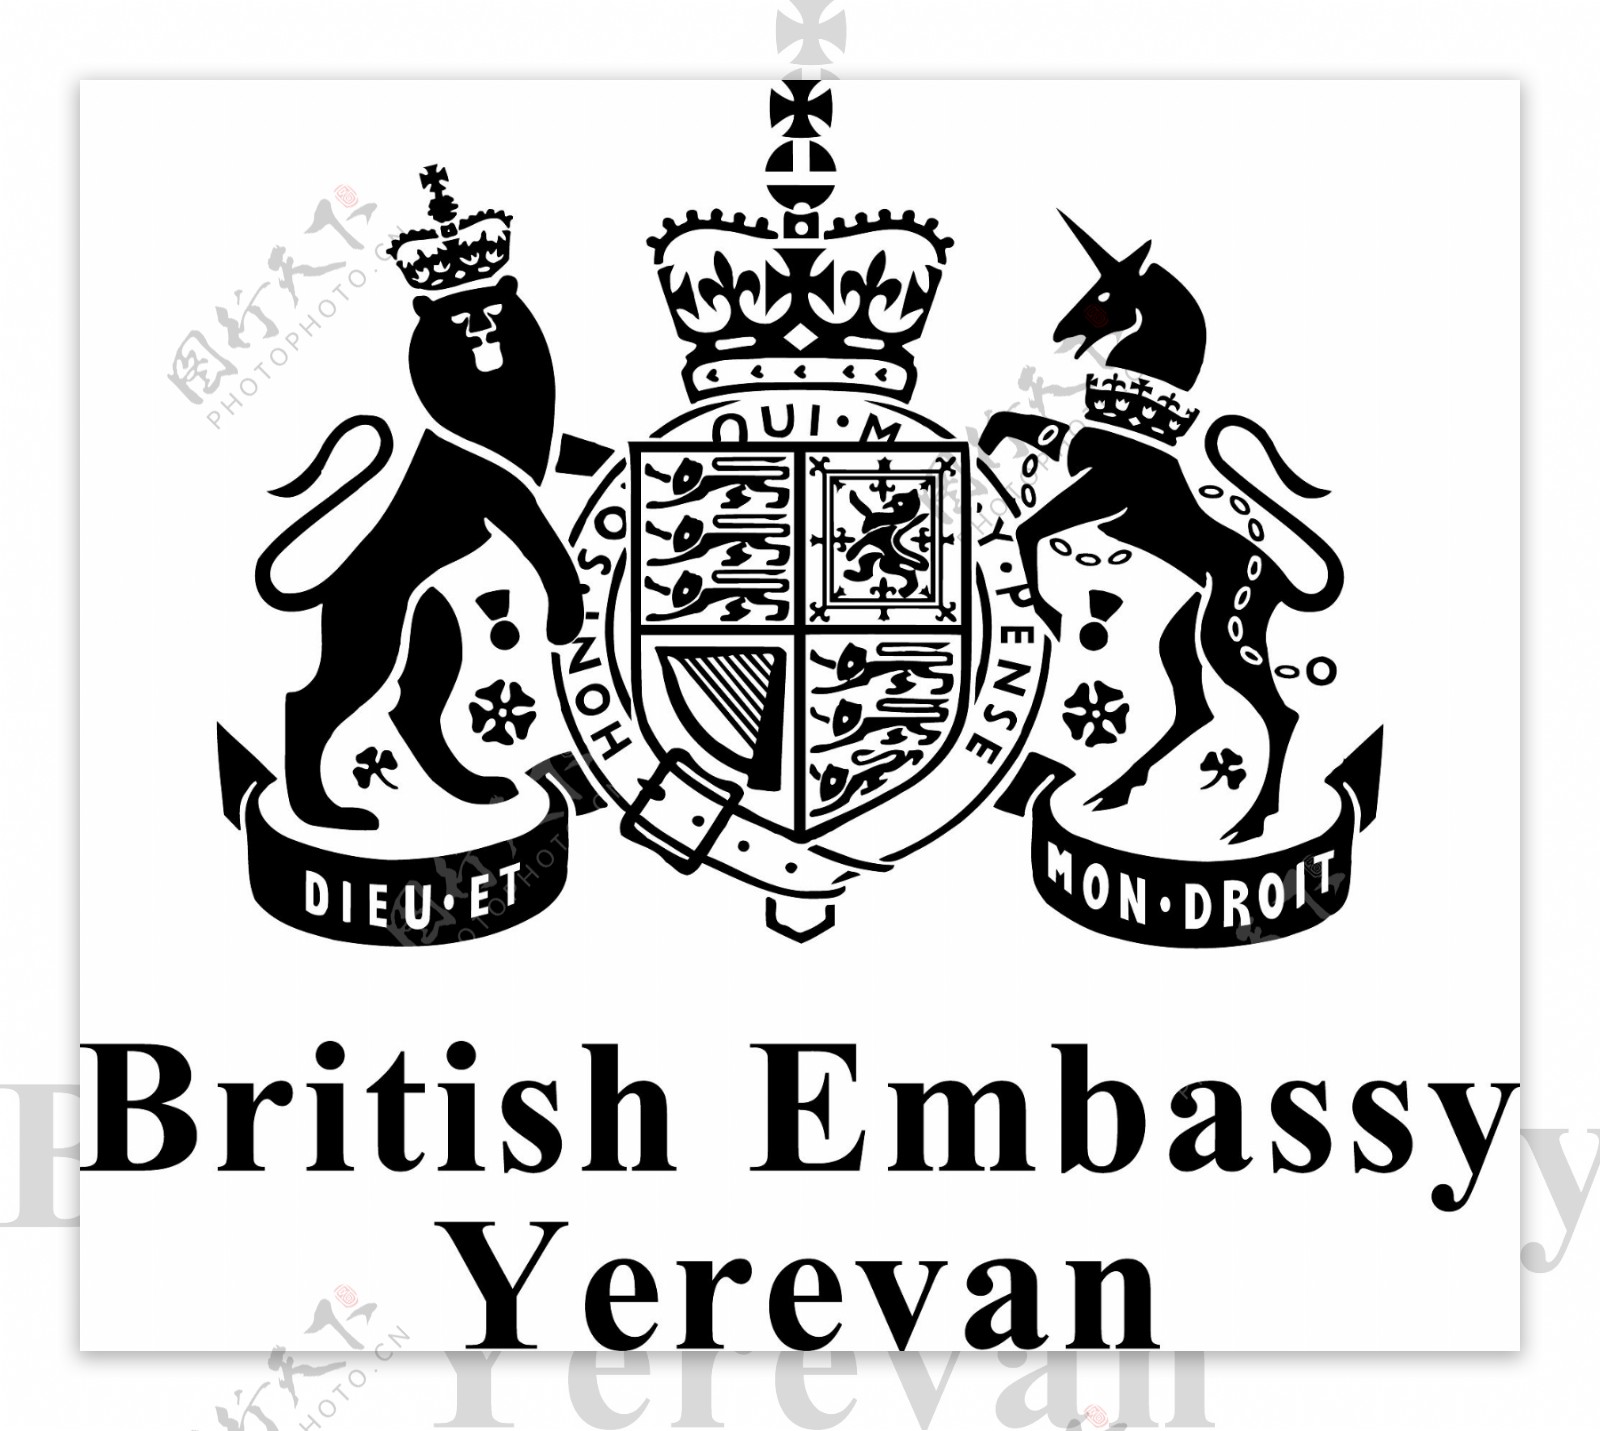 英国大使馆